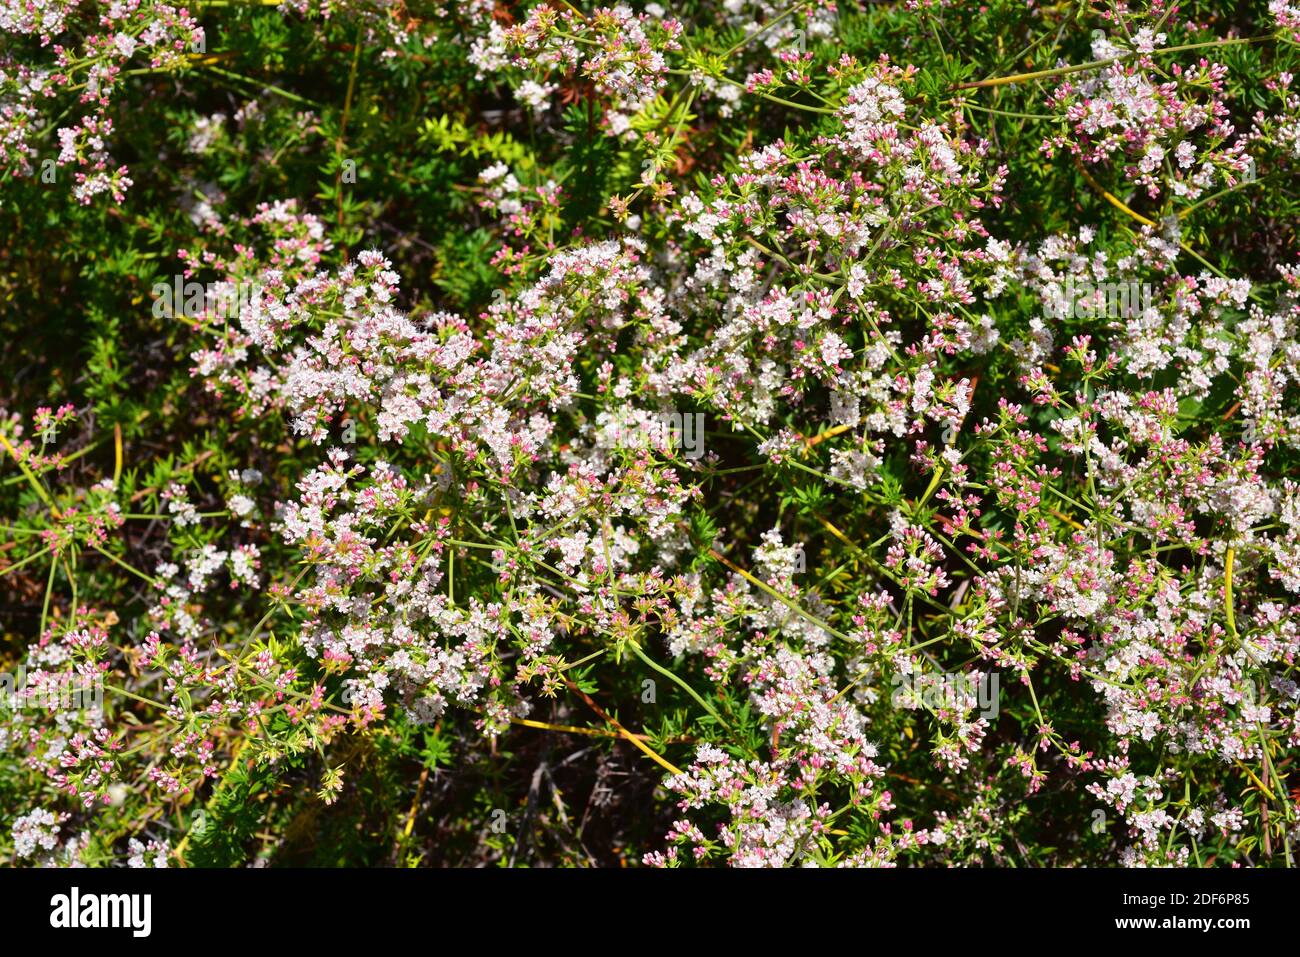 El alforfón de California o alforfón de Mojave (Eriogon fasciculatum) es un arbusto nativo del sudoeste de EE.UU. Y del noroeste de México. Foto de stock